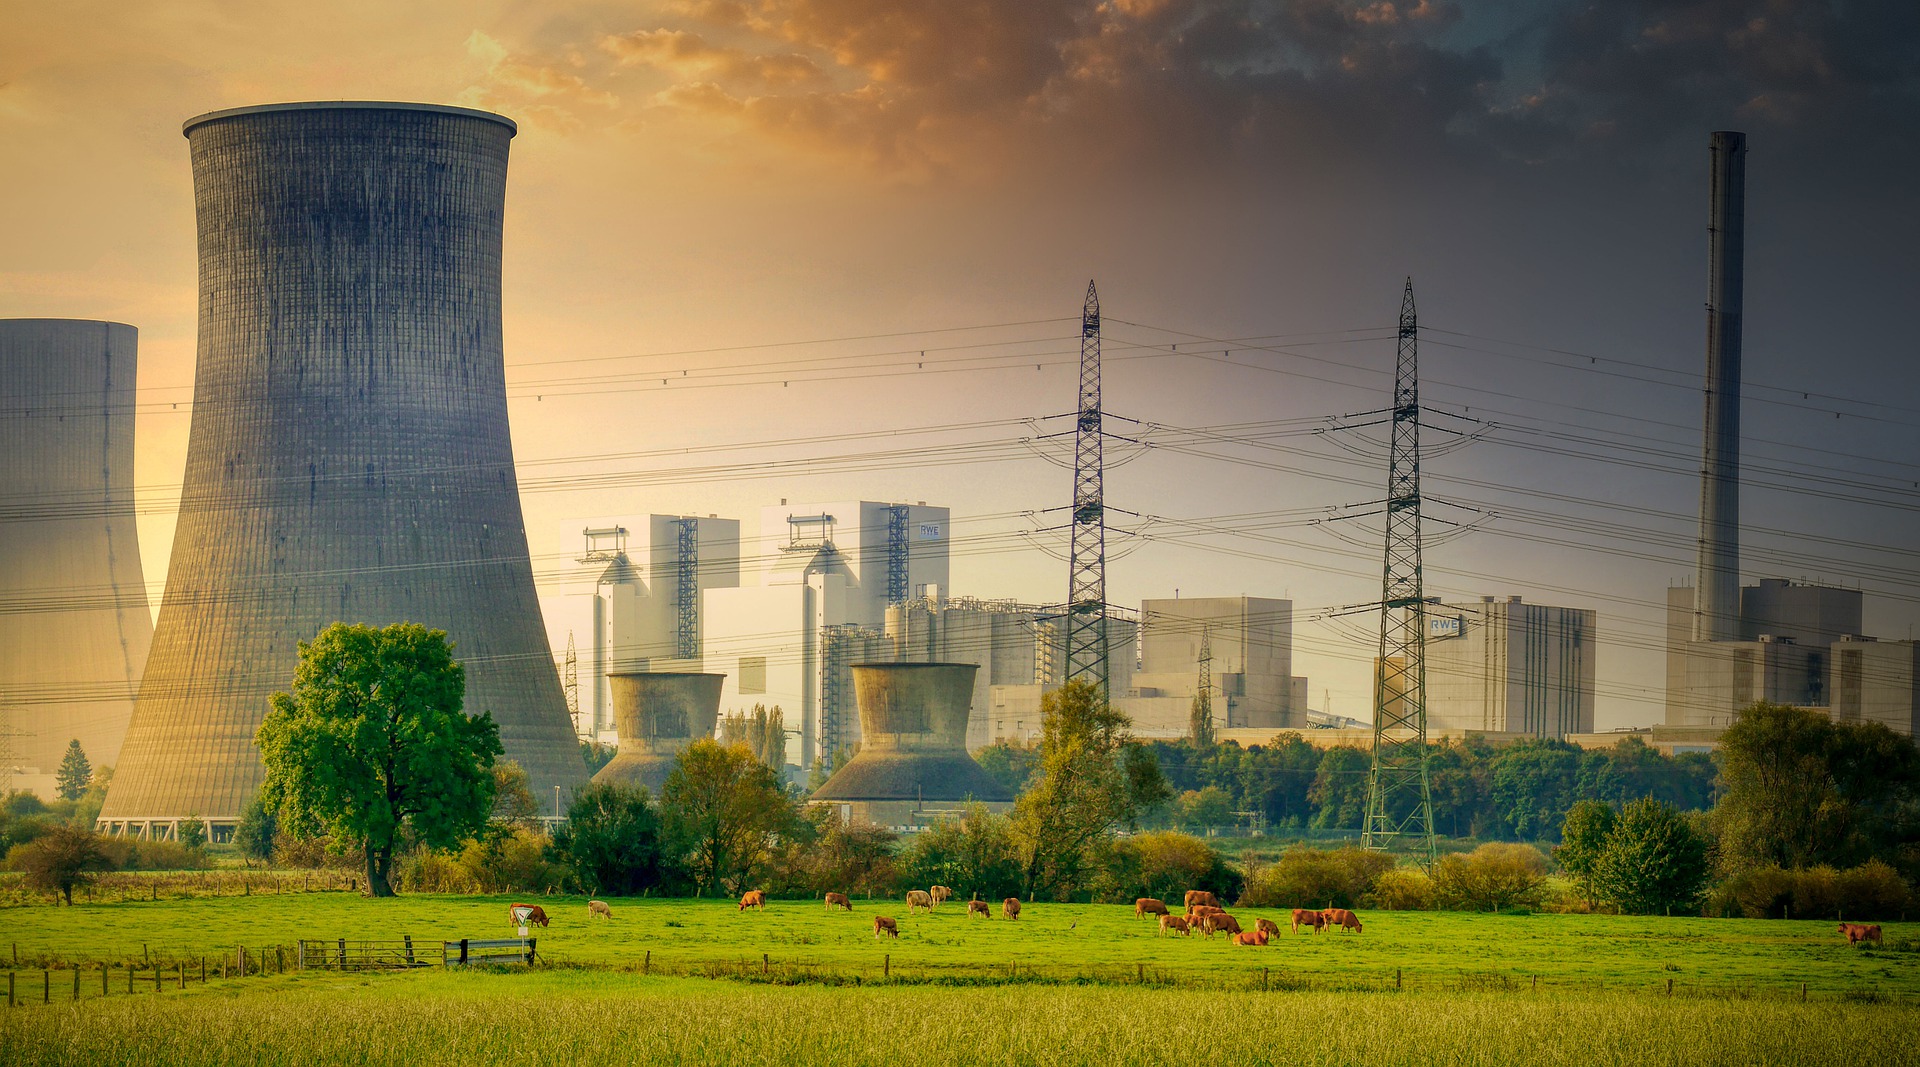 Kraftwerk - Nuclear powerplant